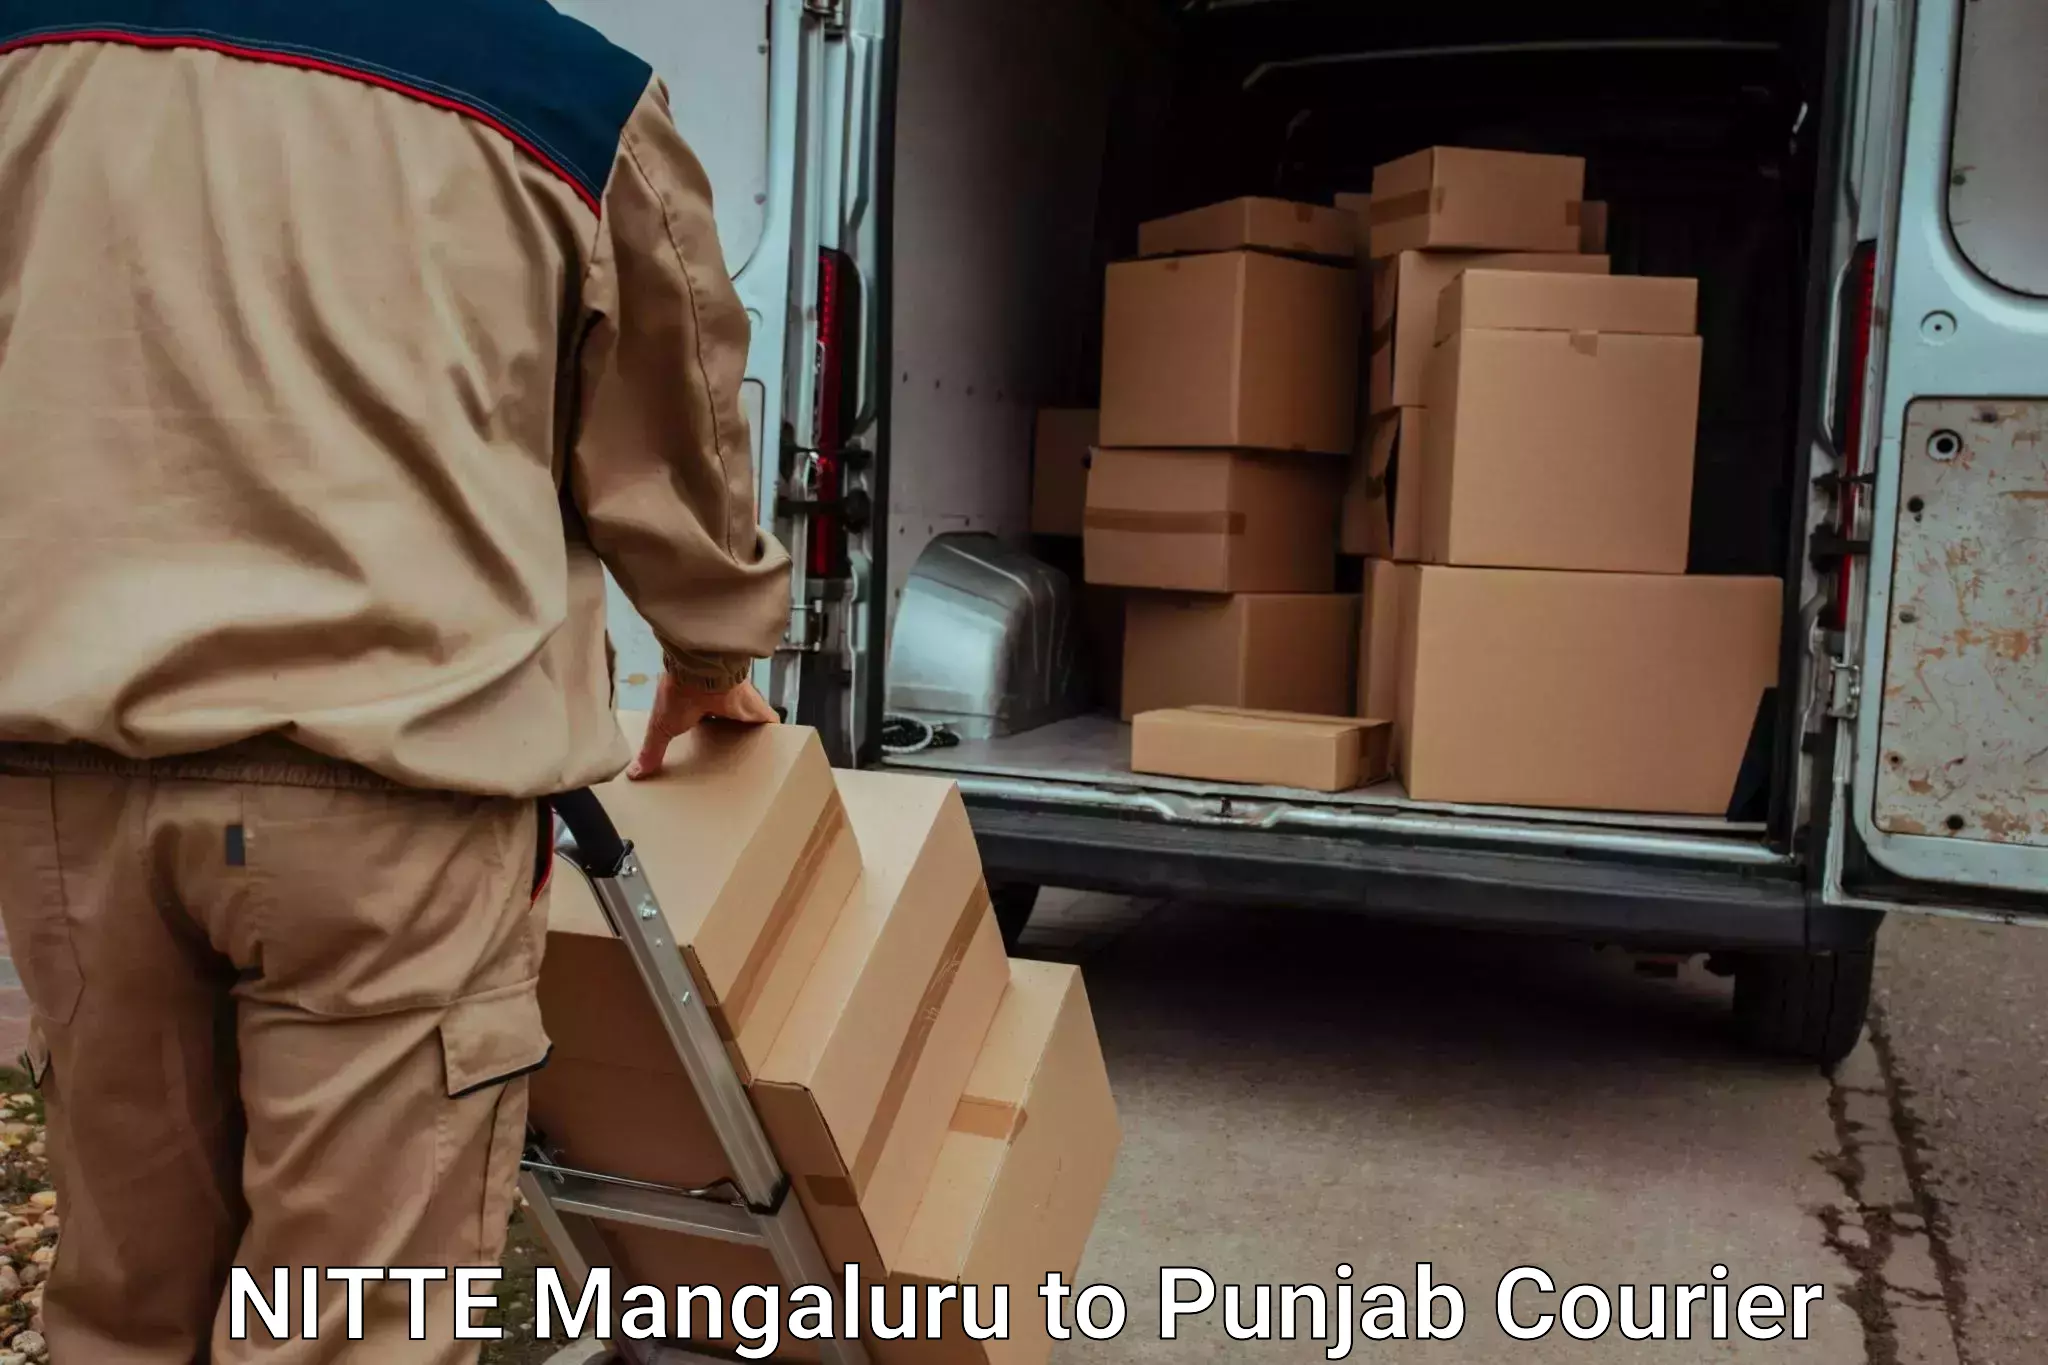 Door-to-door relocation services NITTE Mangaluru to Punjab